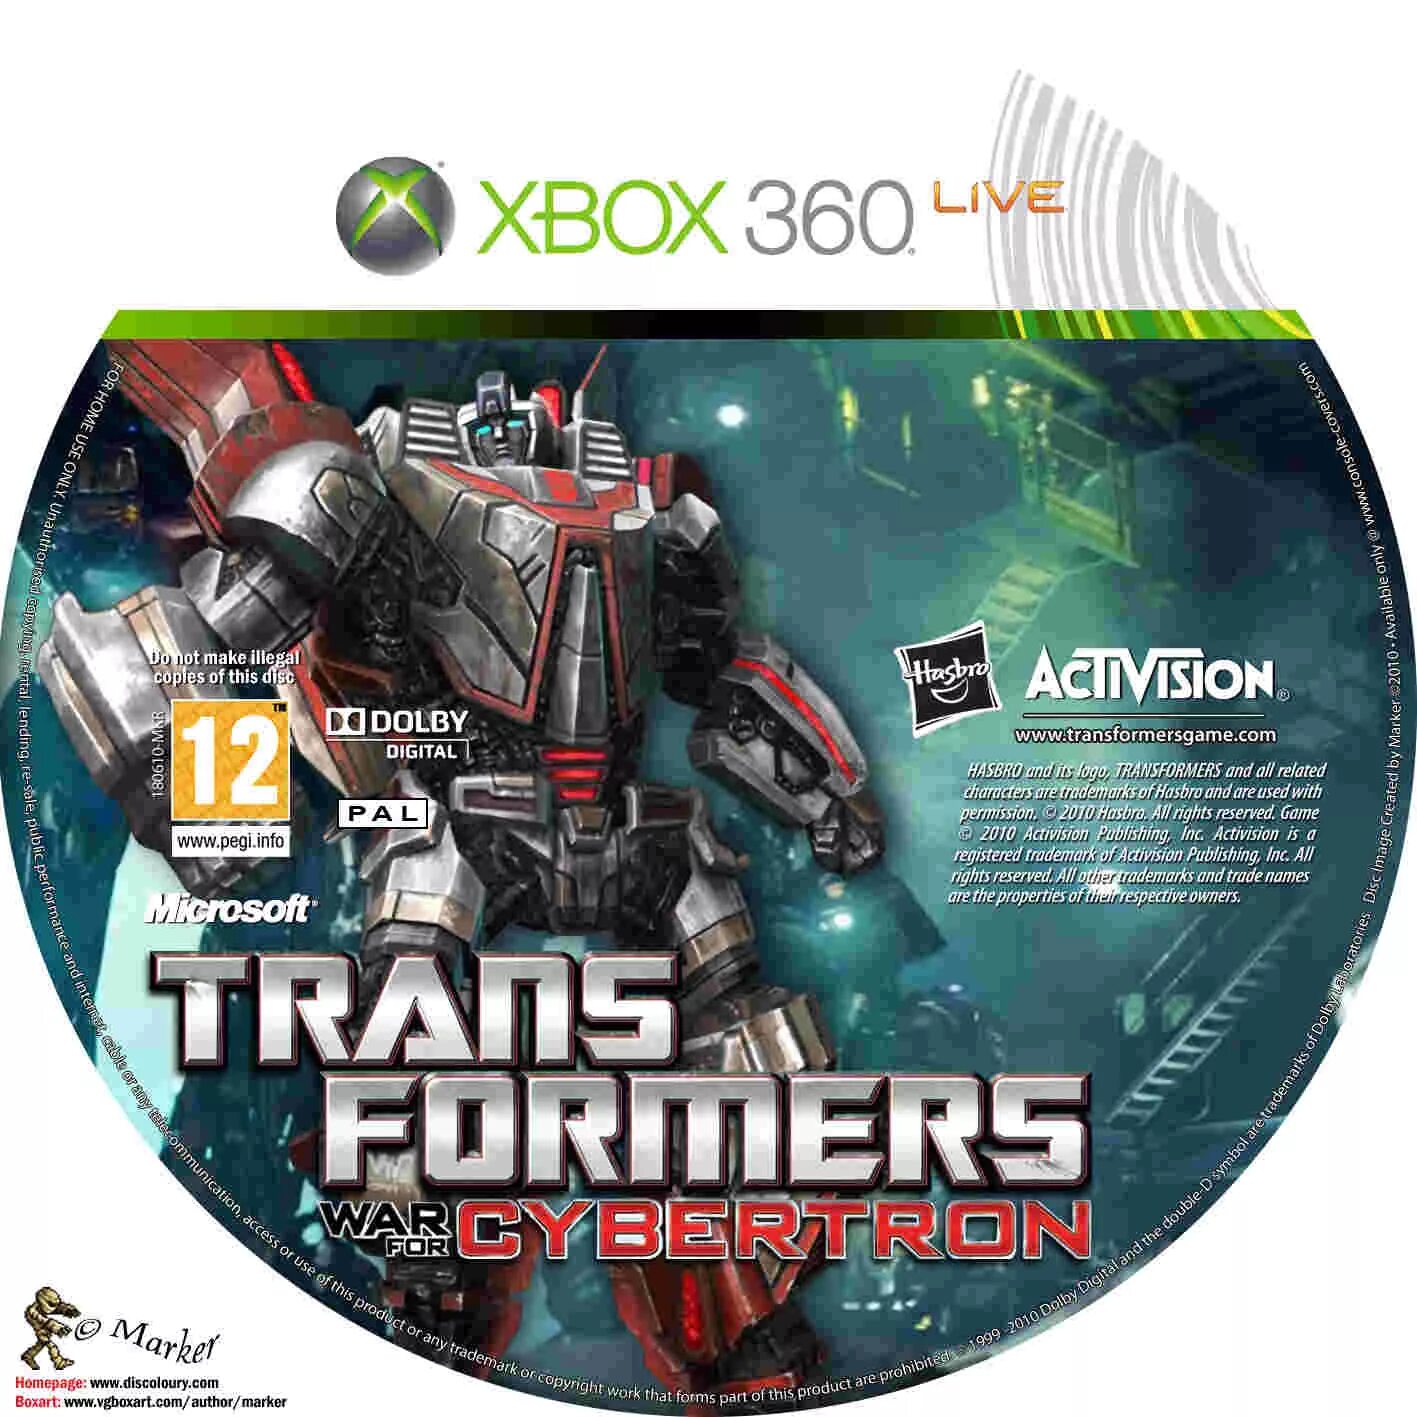 Трансформеры на хбокс 360 обложка. Приставка игровая Xbox 360 Transformers. Трансформер диски на Xbox 360.